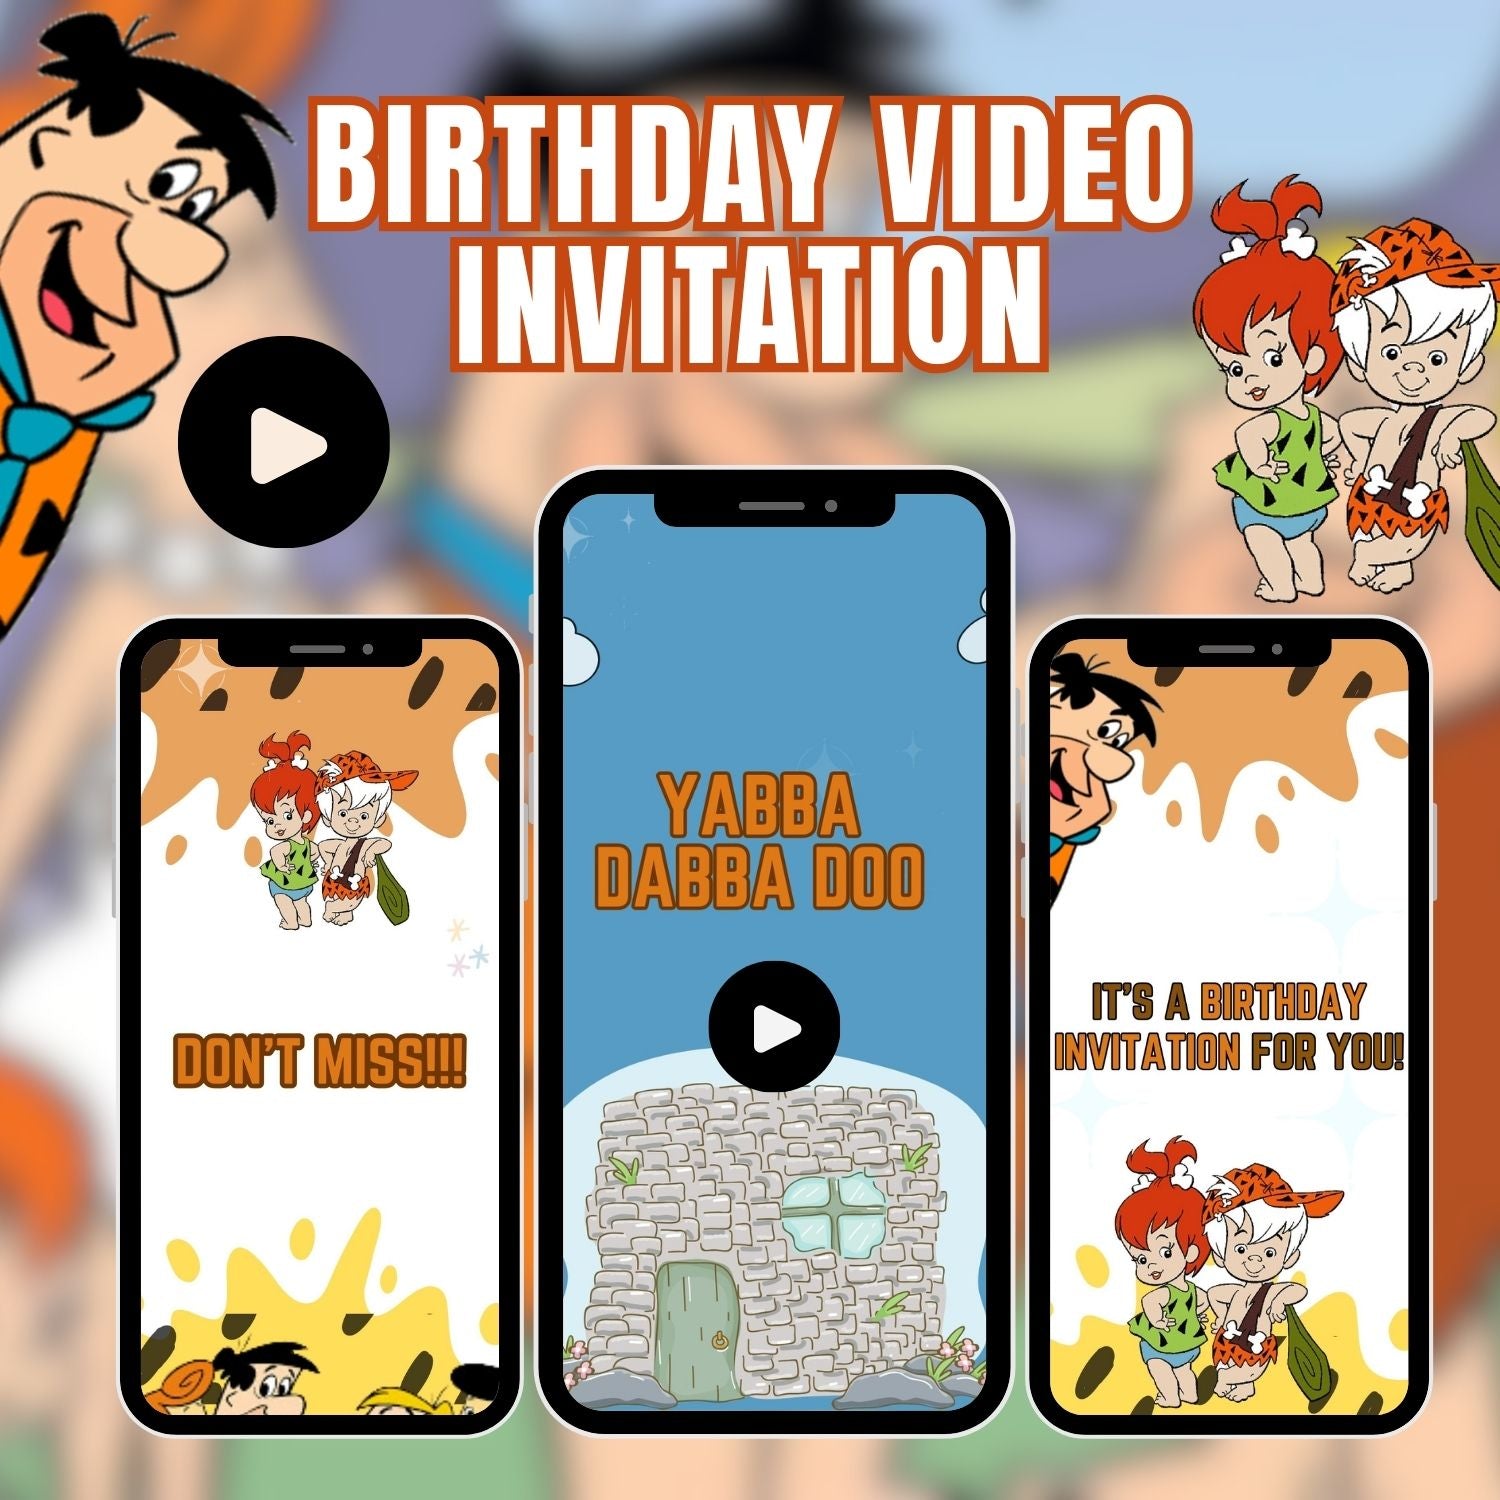 Flintstone Bam Bam Birthday Video Invitation  Personalized Flintstone Bam Bam Invitation